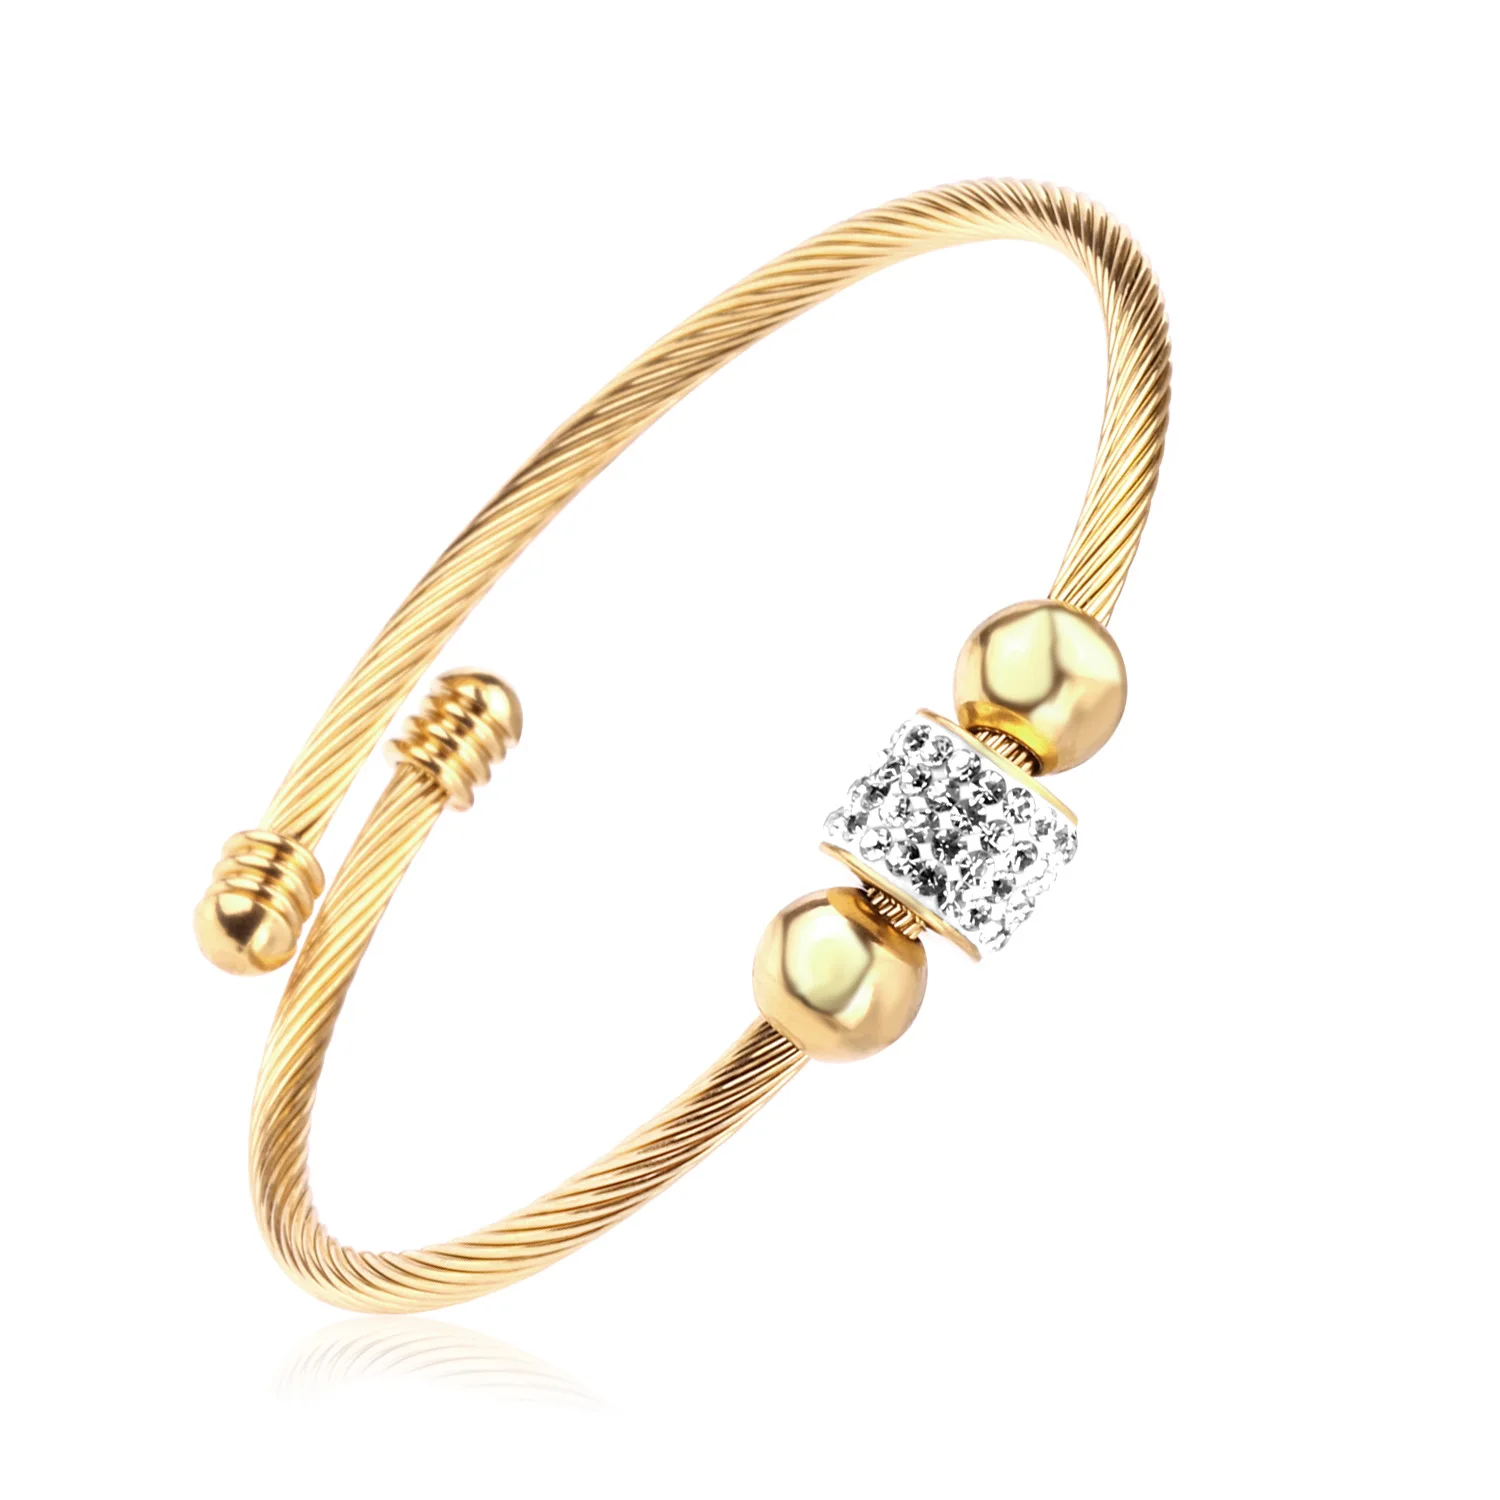 Fashion Women Thin Bracelet Rhinestone Bangle Cuff Wristband Chain Jewelry Gift